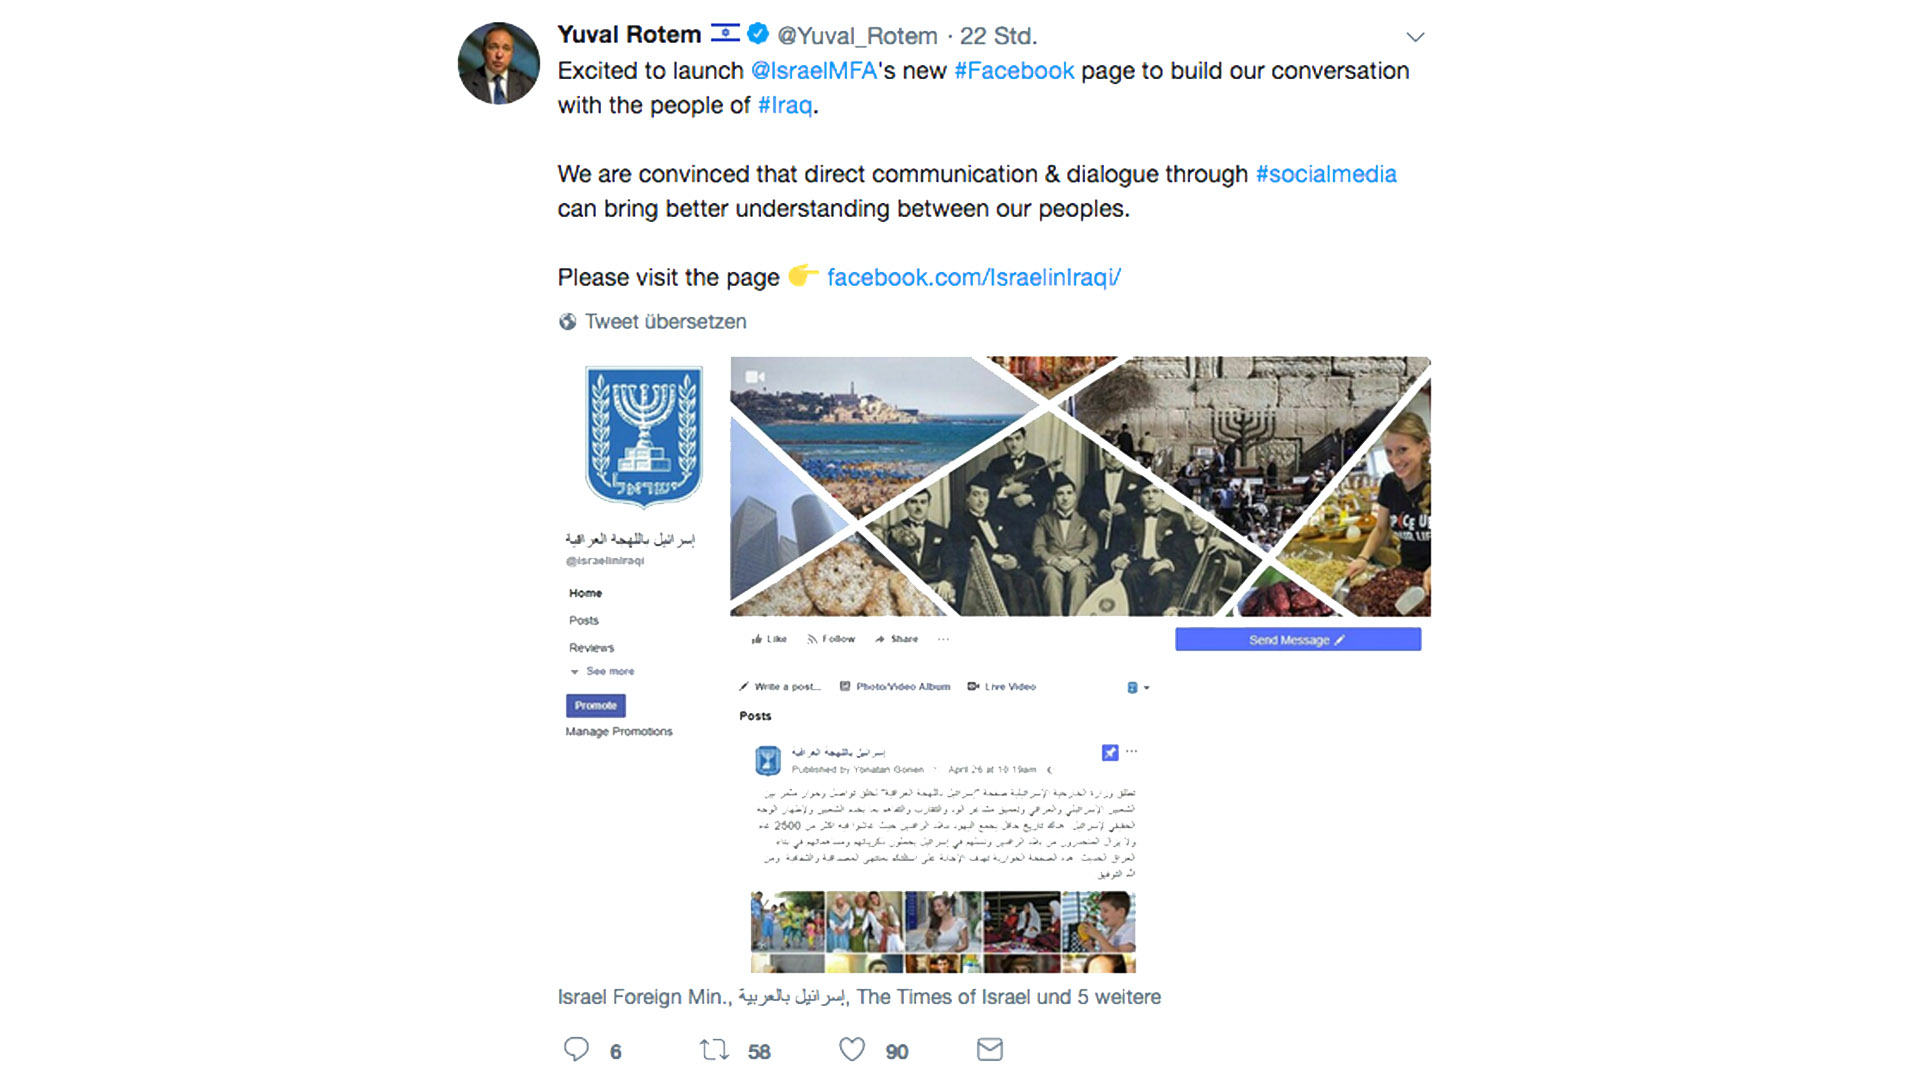 Ein Post des Generaldirektors des israelischen Außenministeriums, Juval Rotem